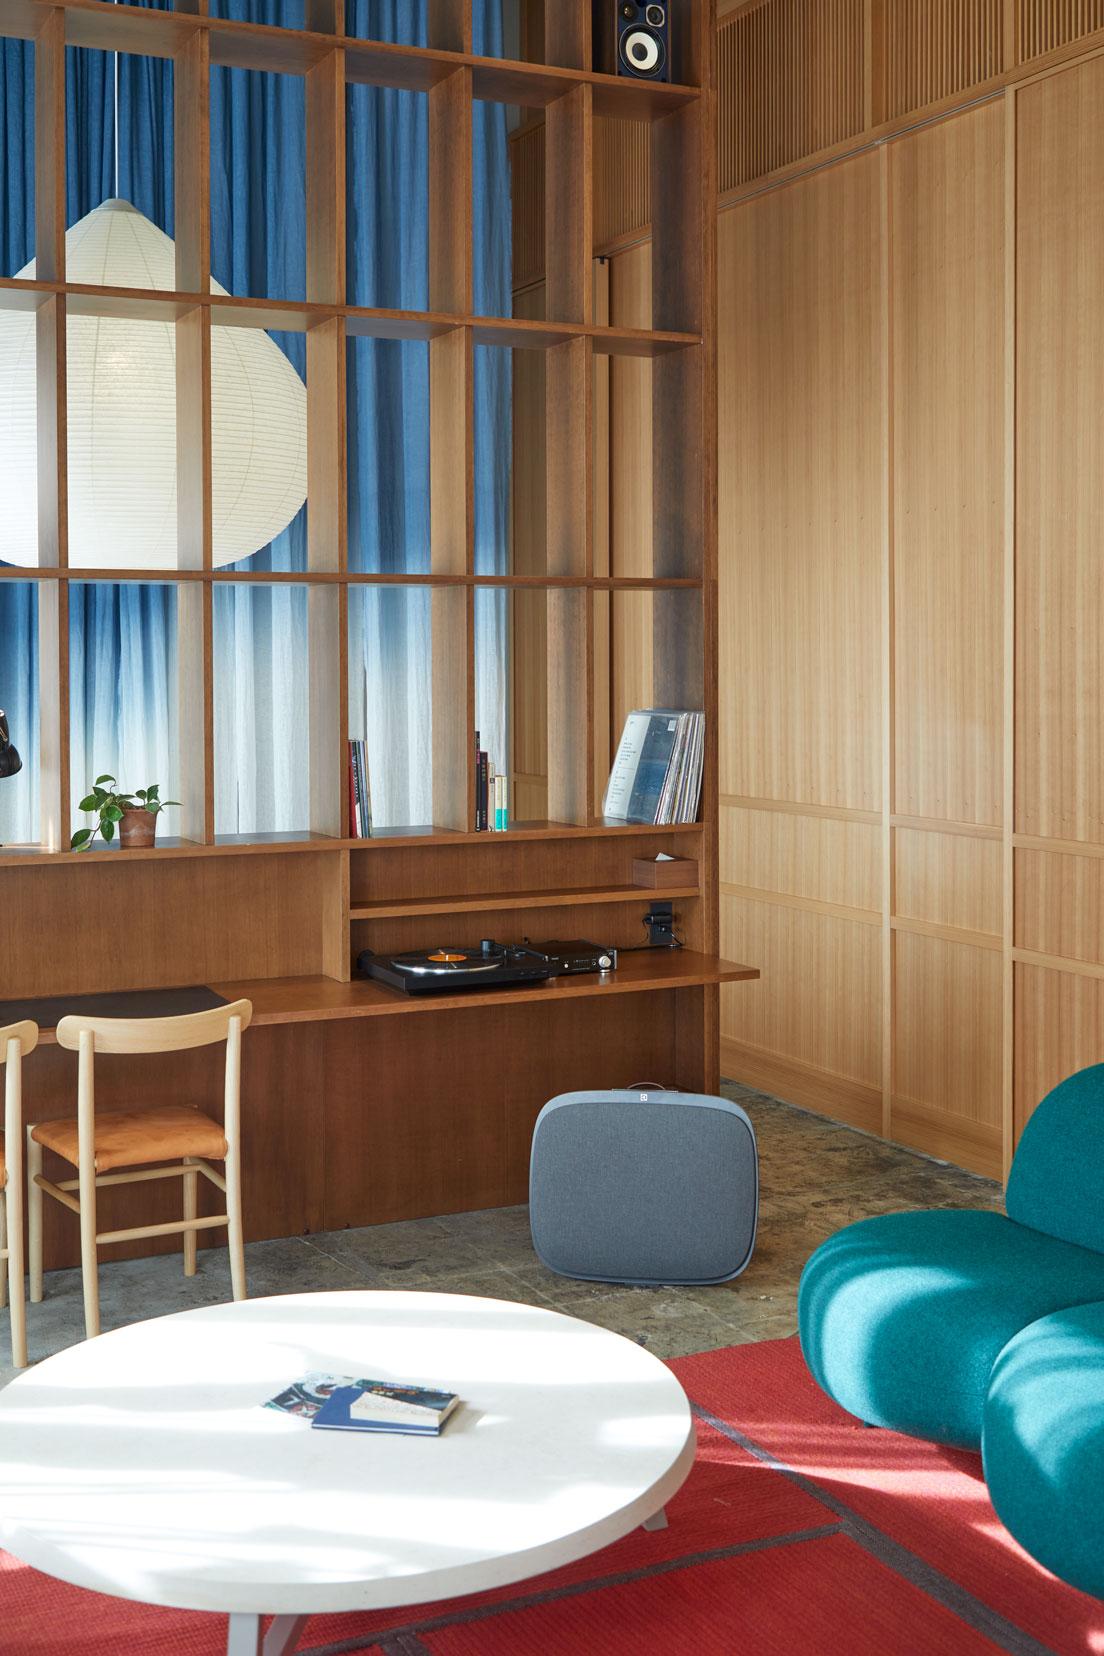 ウッディな内装にポップな配色の家具が効いた〈HOTEL K5〉のスイートルーム。ファブリック張りの《Well A7》が馴染んでいる。
